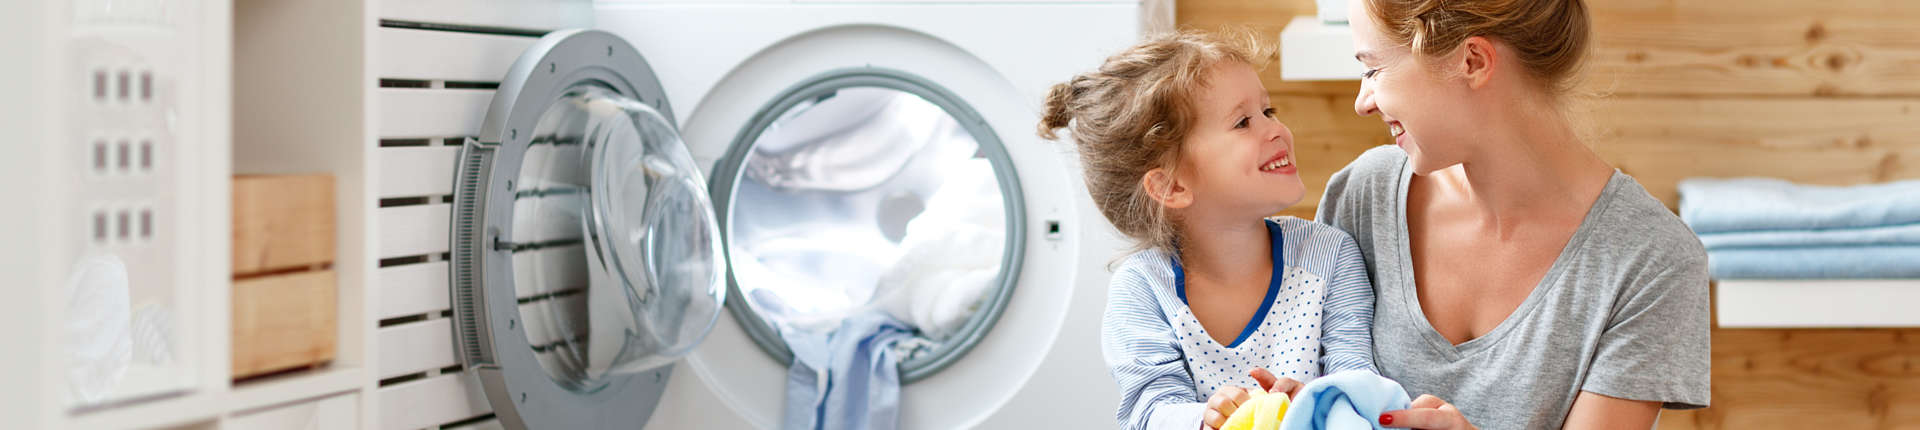 E&E_Mutter und Kind bei Waschmaschine